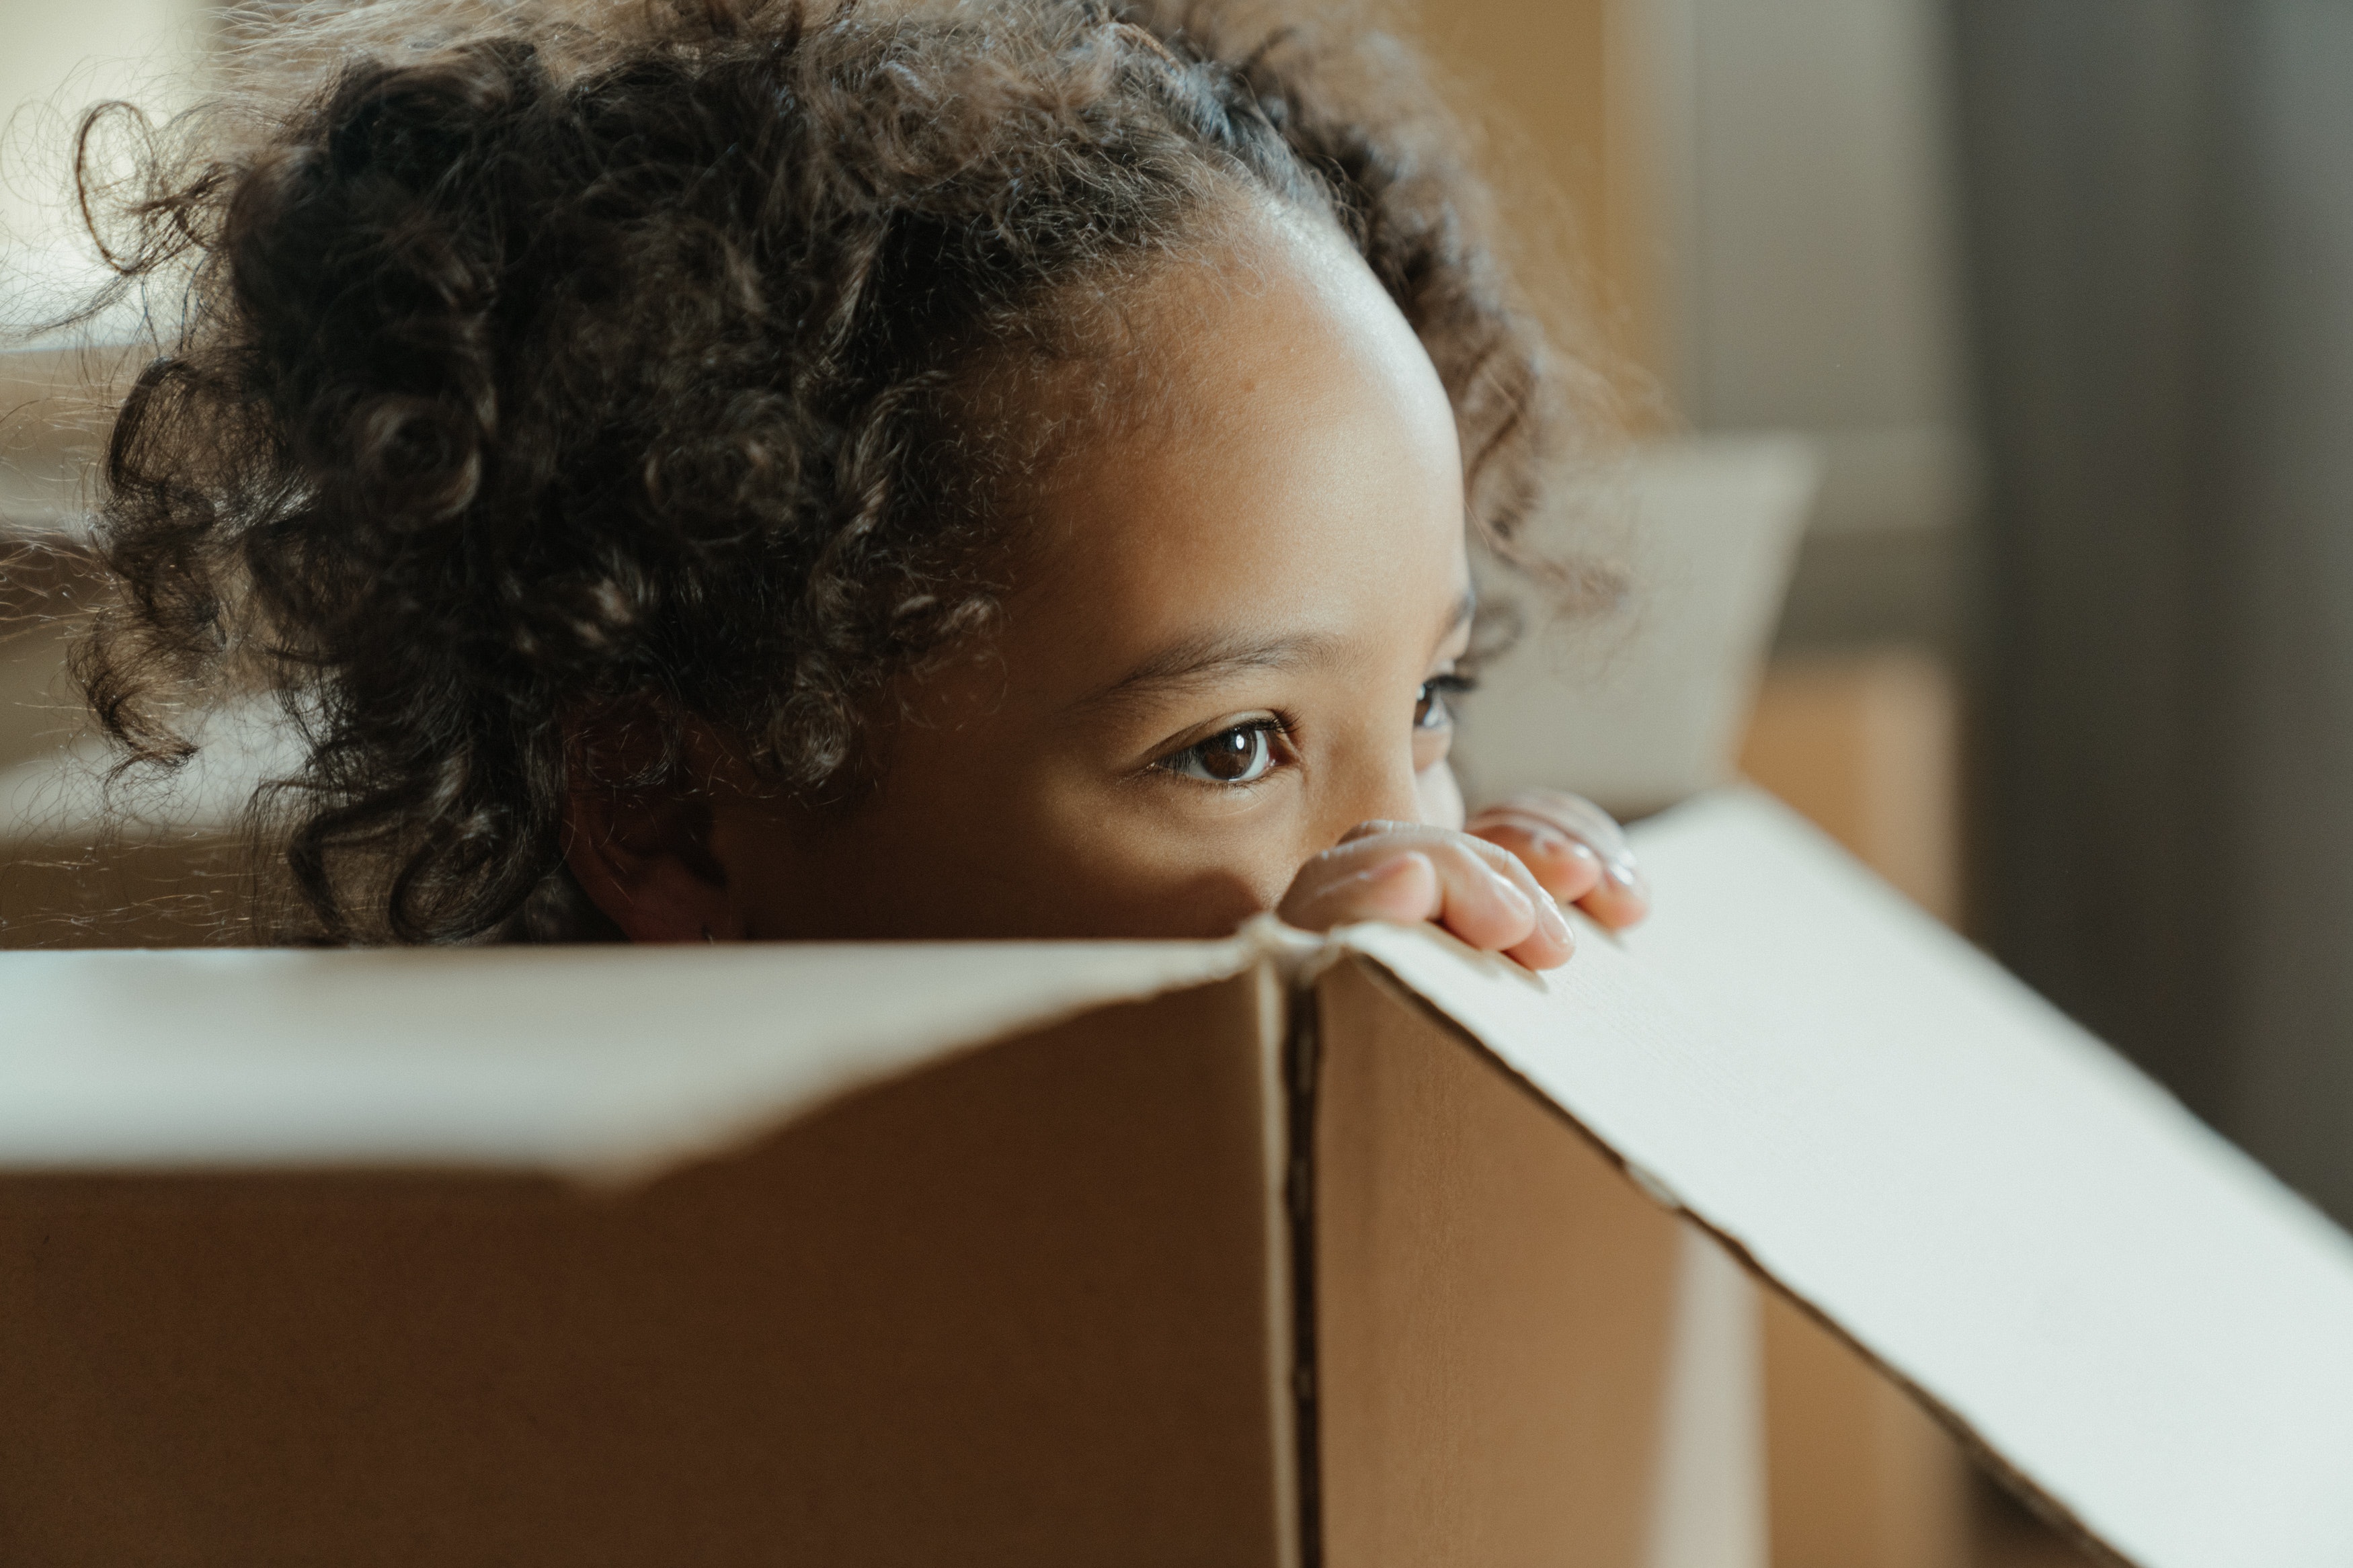 A child in a cardboard box